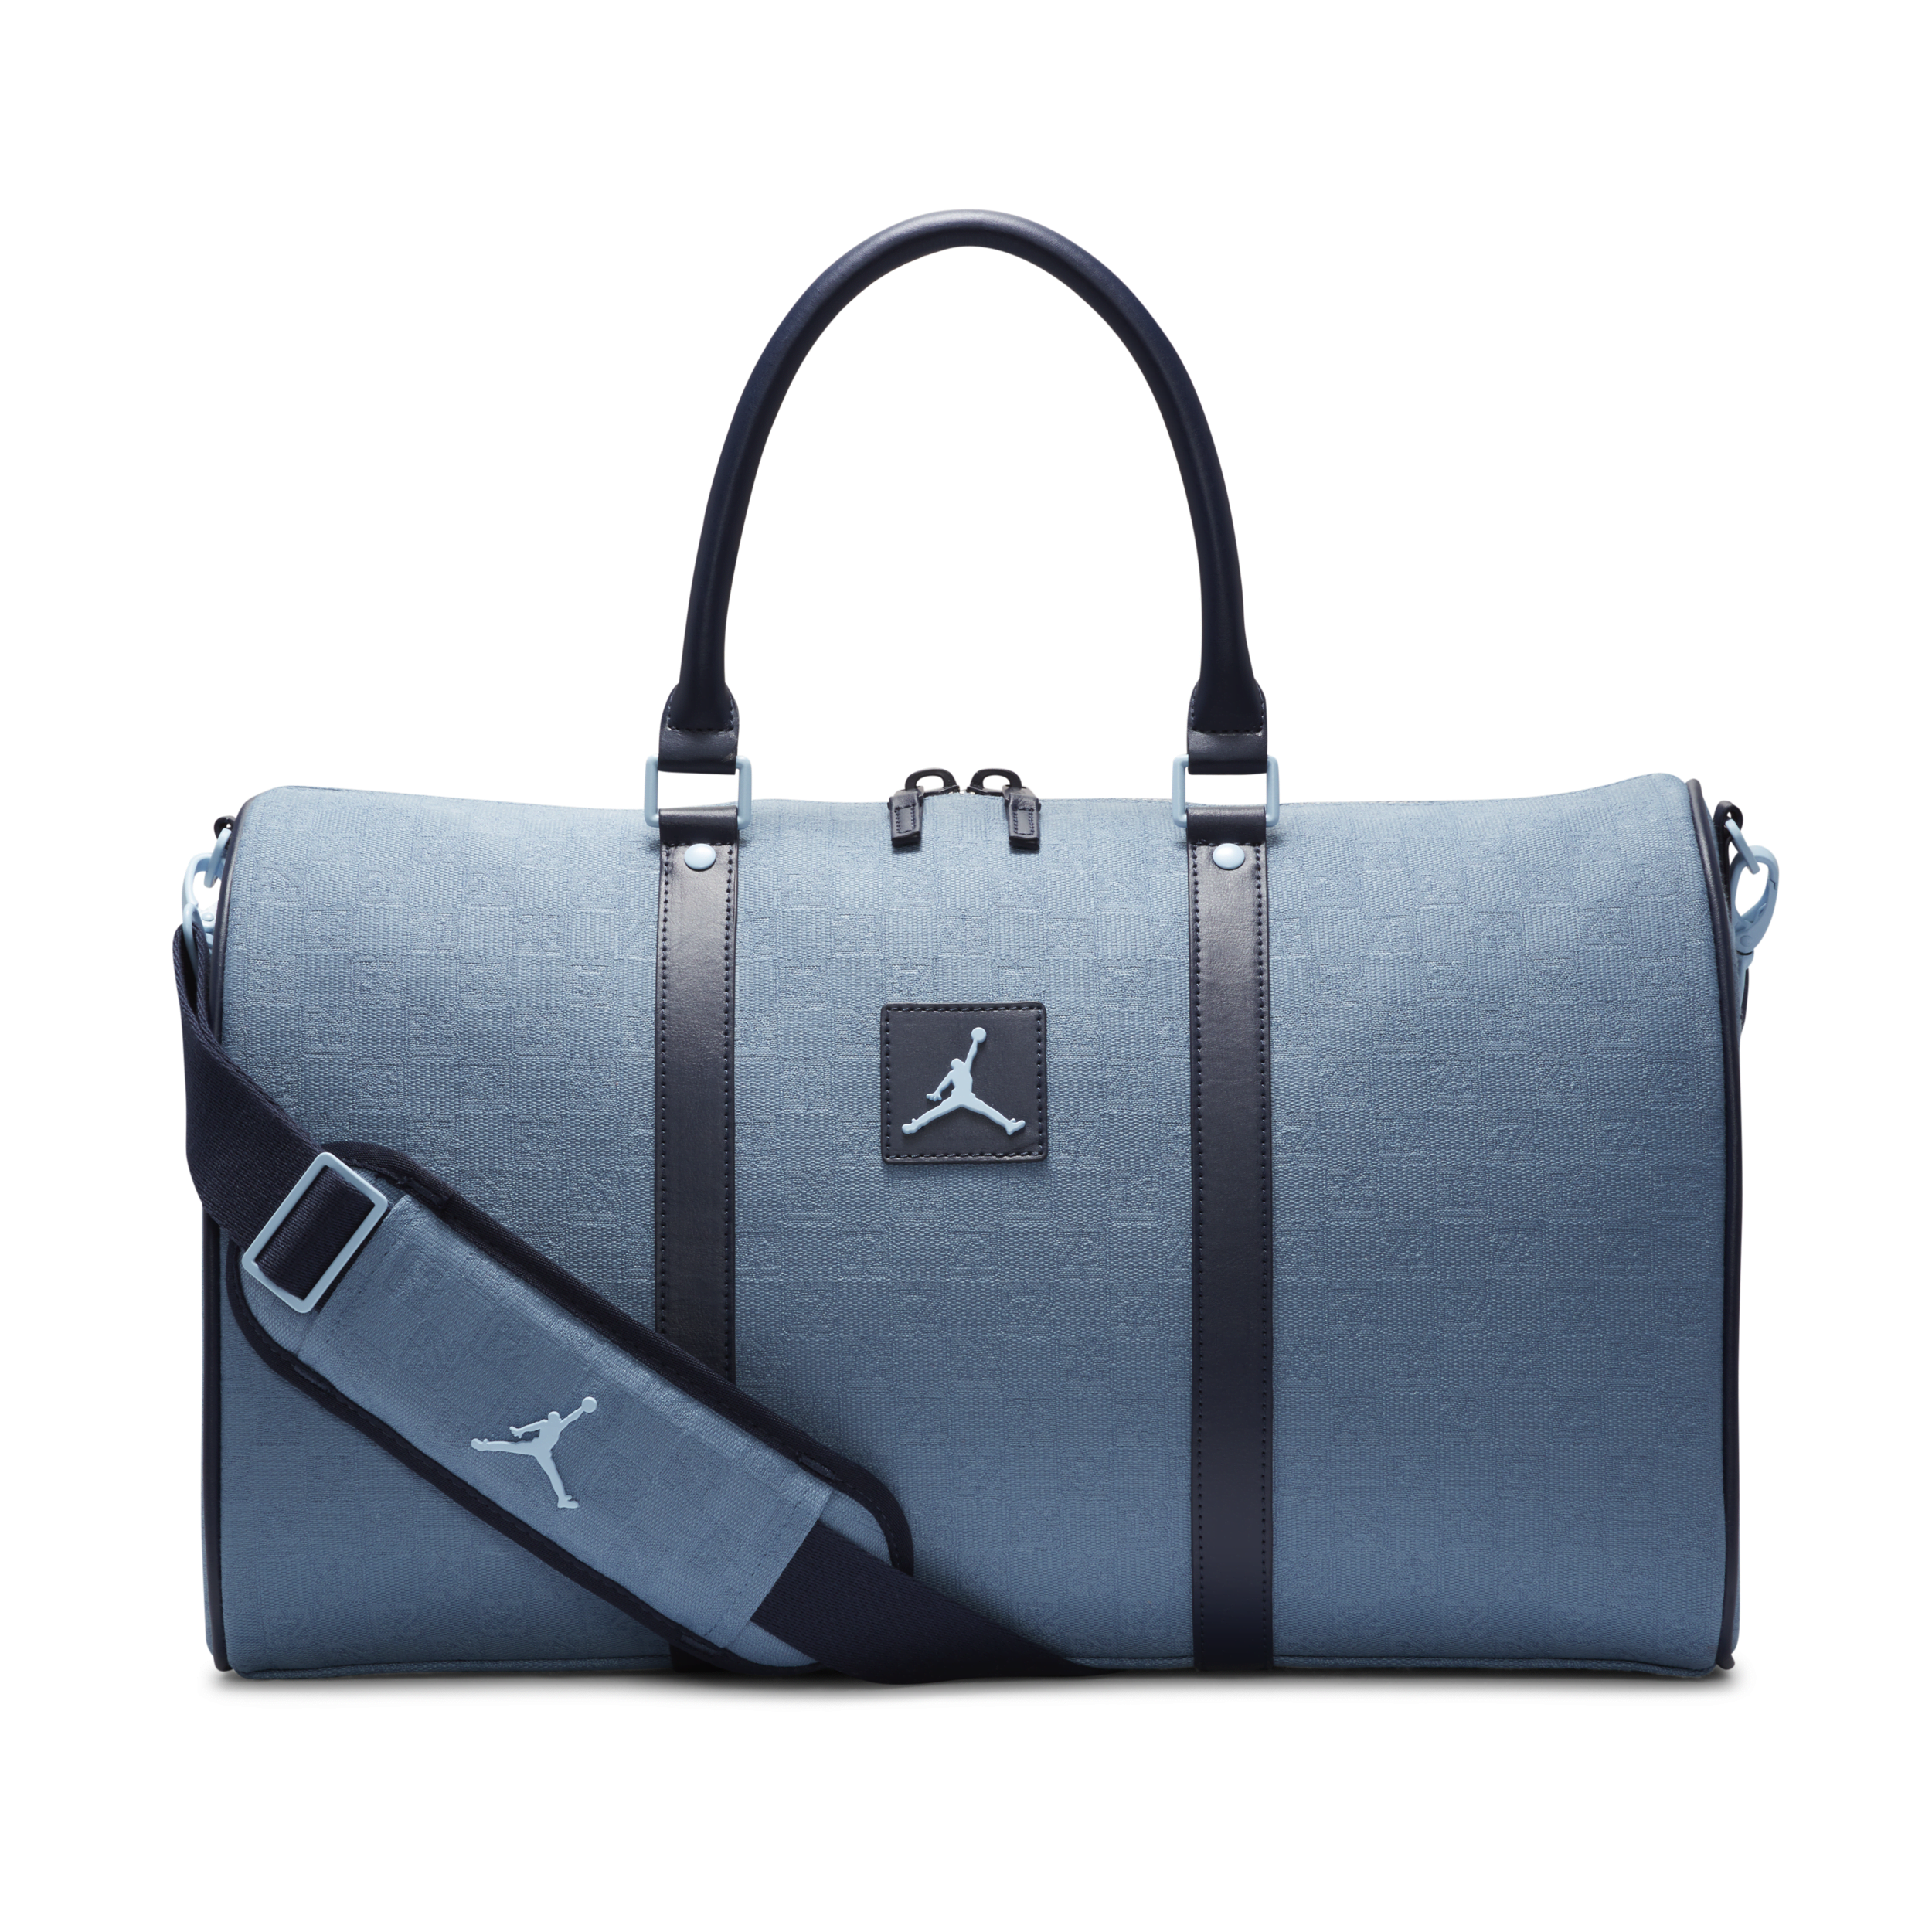 Jordan Monogram Duffle Duffle Bag In Blue